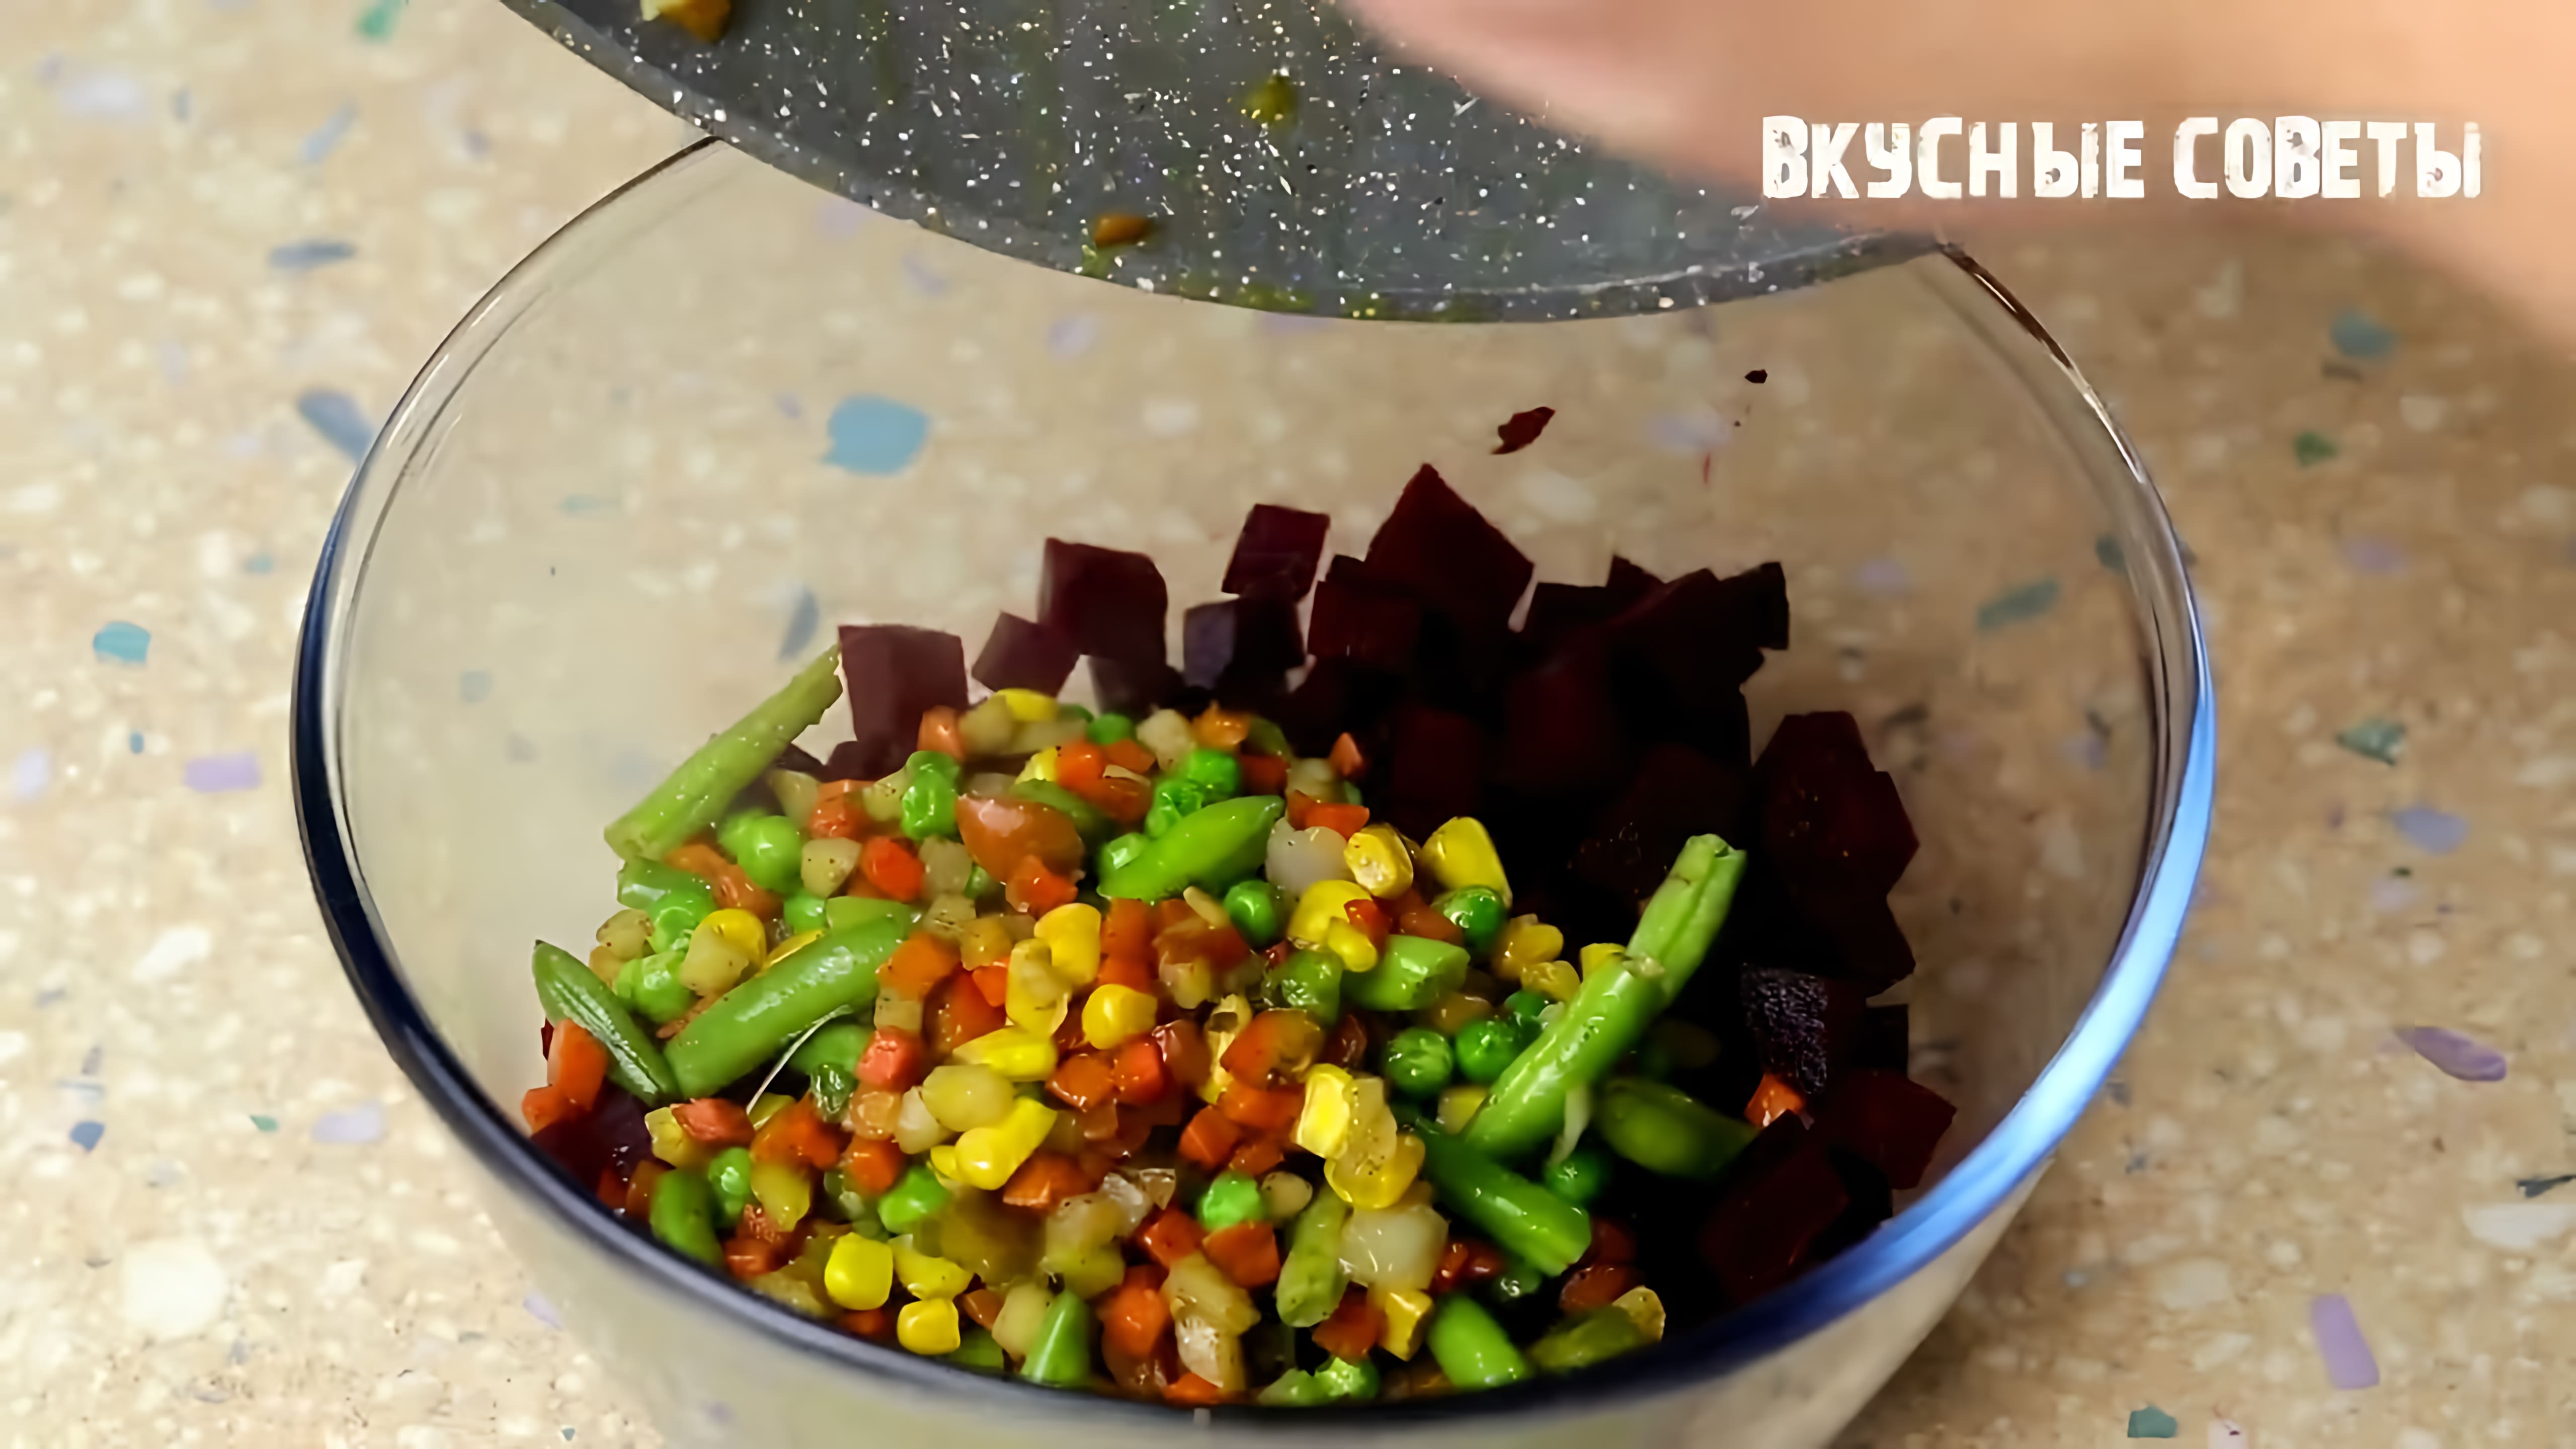 Видео: Бесконечно Вкусно! Так готовят винегрет в Мексике!!! Редкий рецепт действительно вкусного салата!